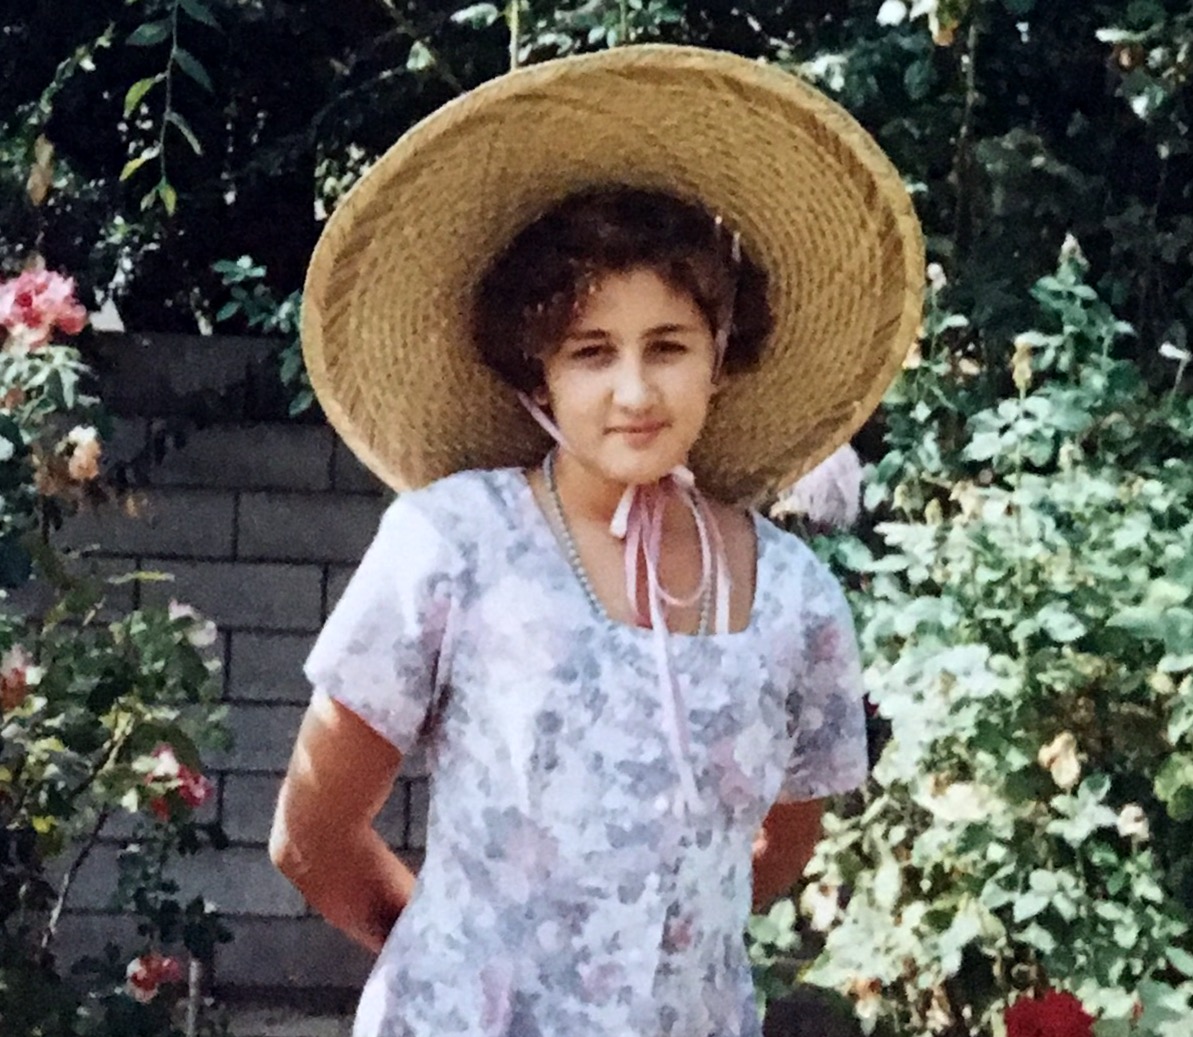 Lauren at Easter 1993